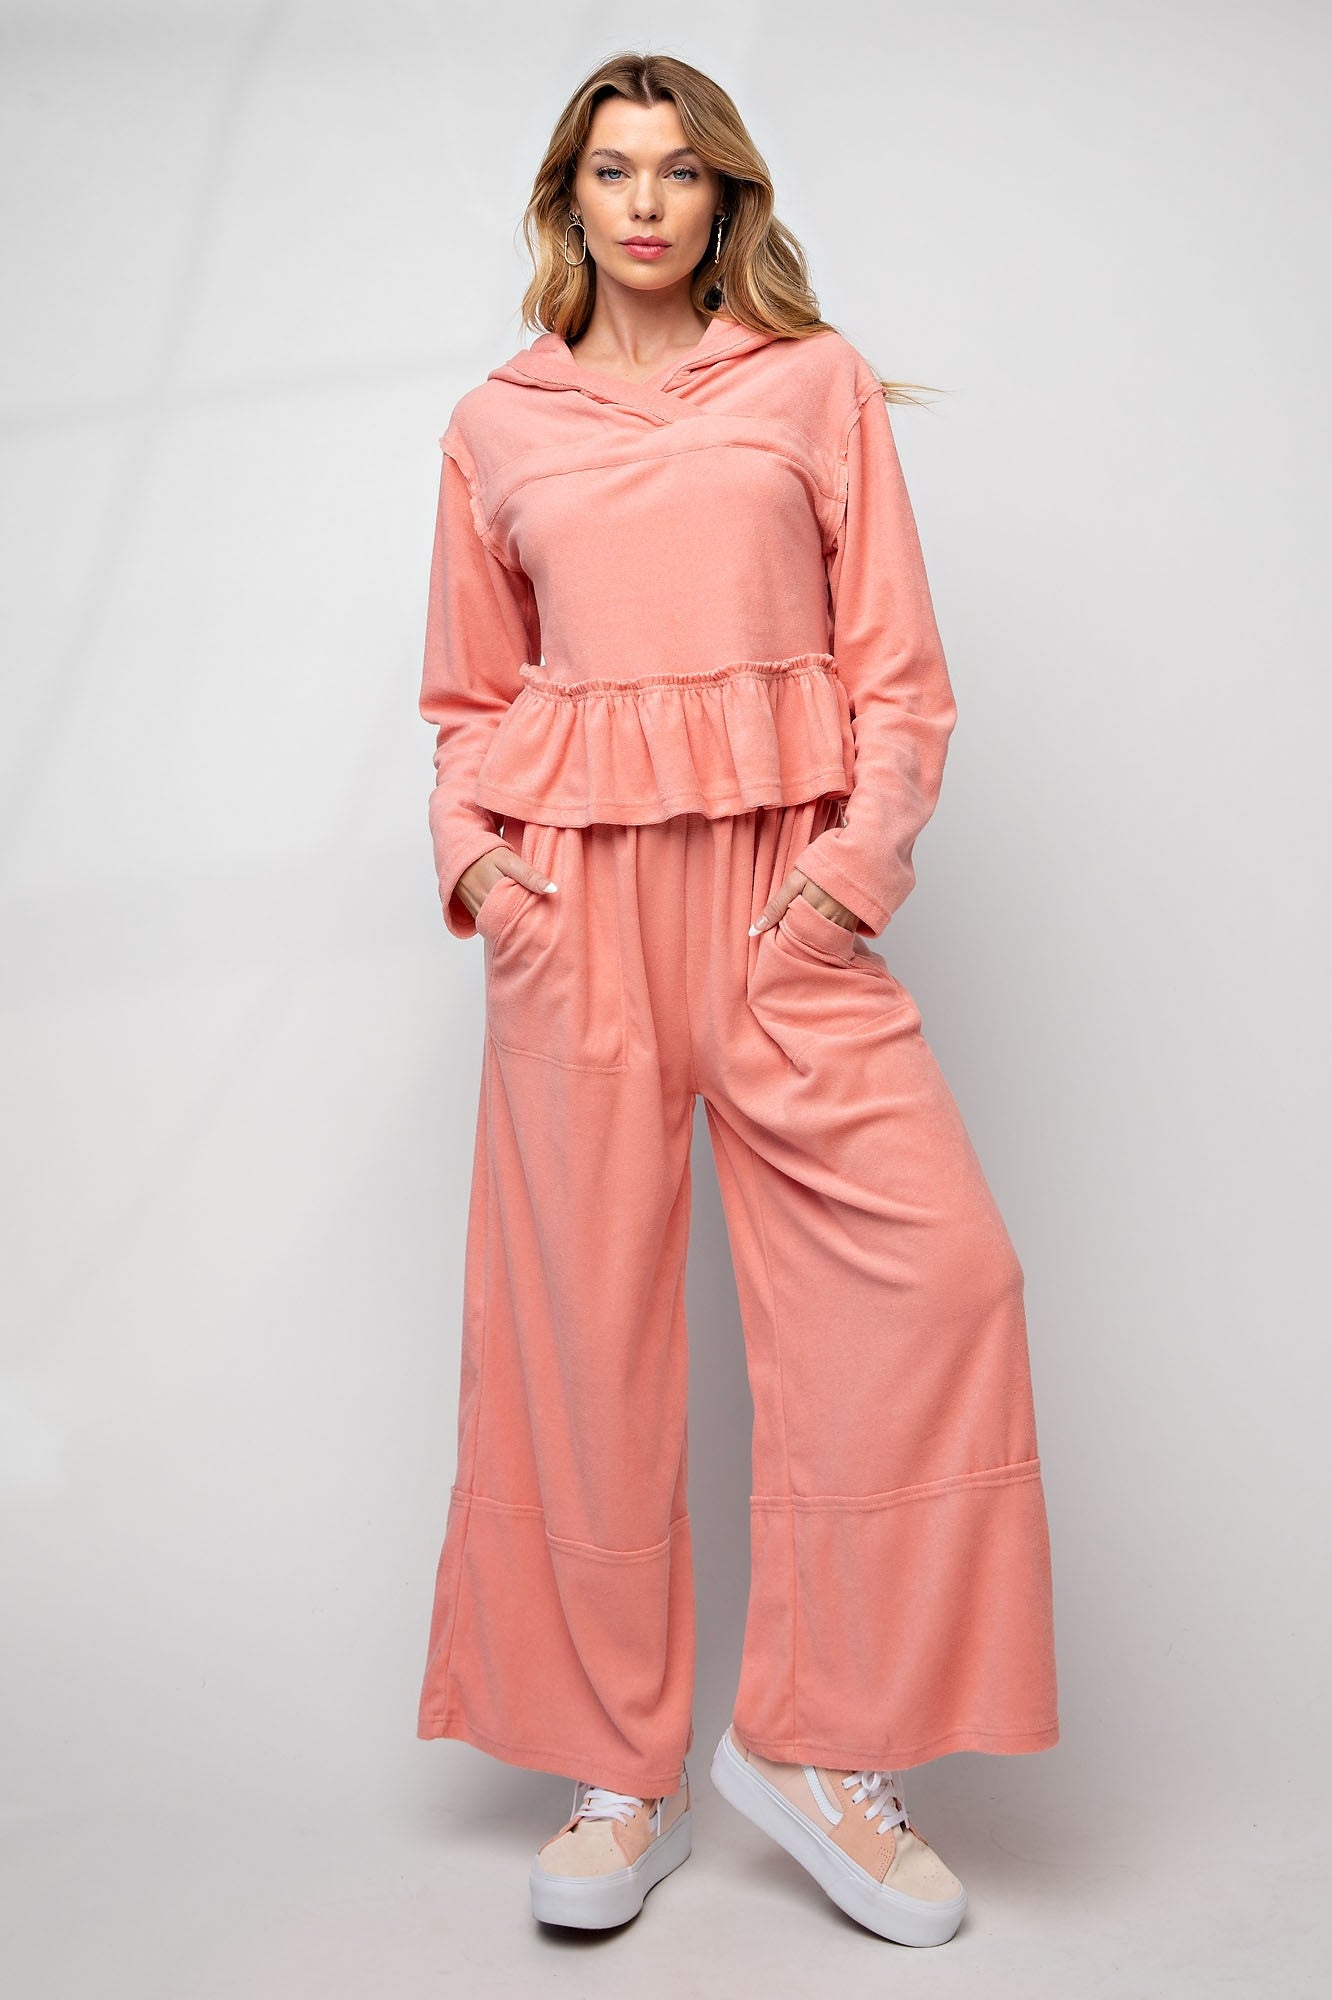 Easel Peach Coral Towel Knit Lounge Pant Set - Roulhac Fashion Boutique